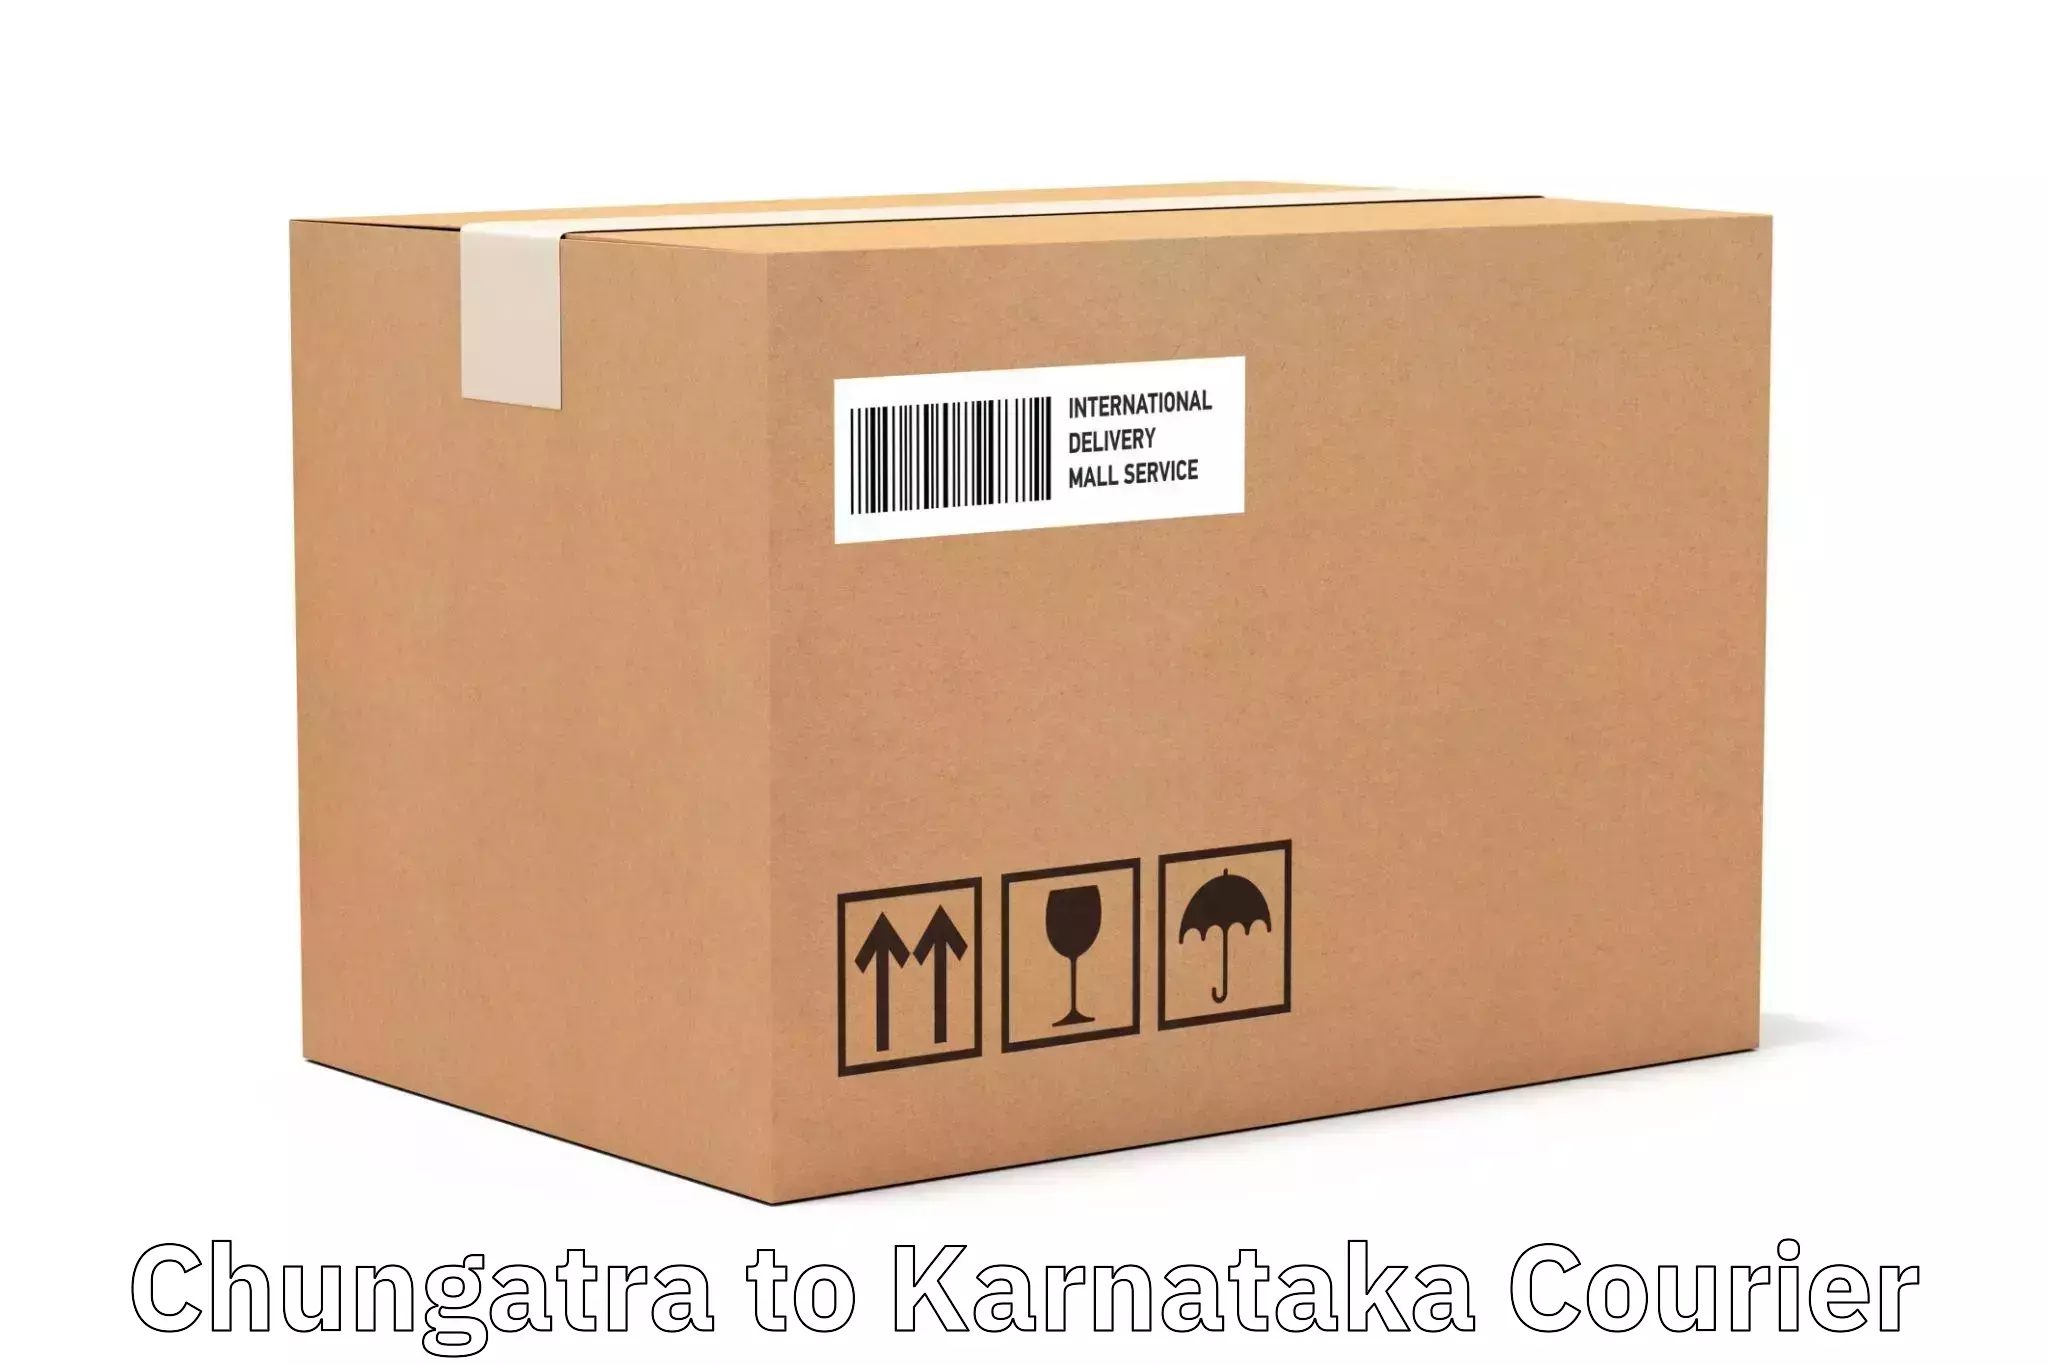 Online package tracking Chungatra to Kanjarakatte